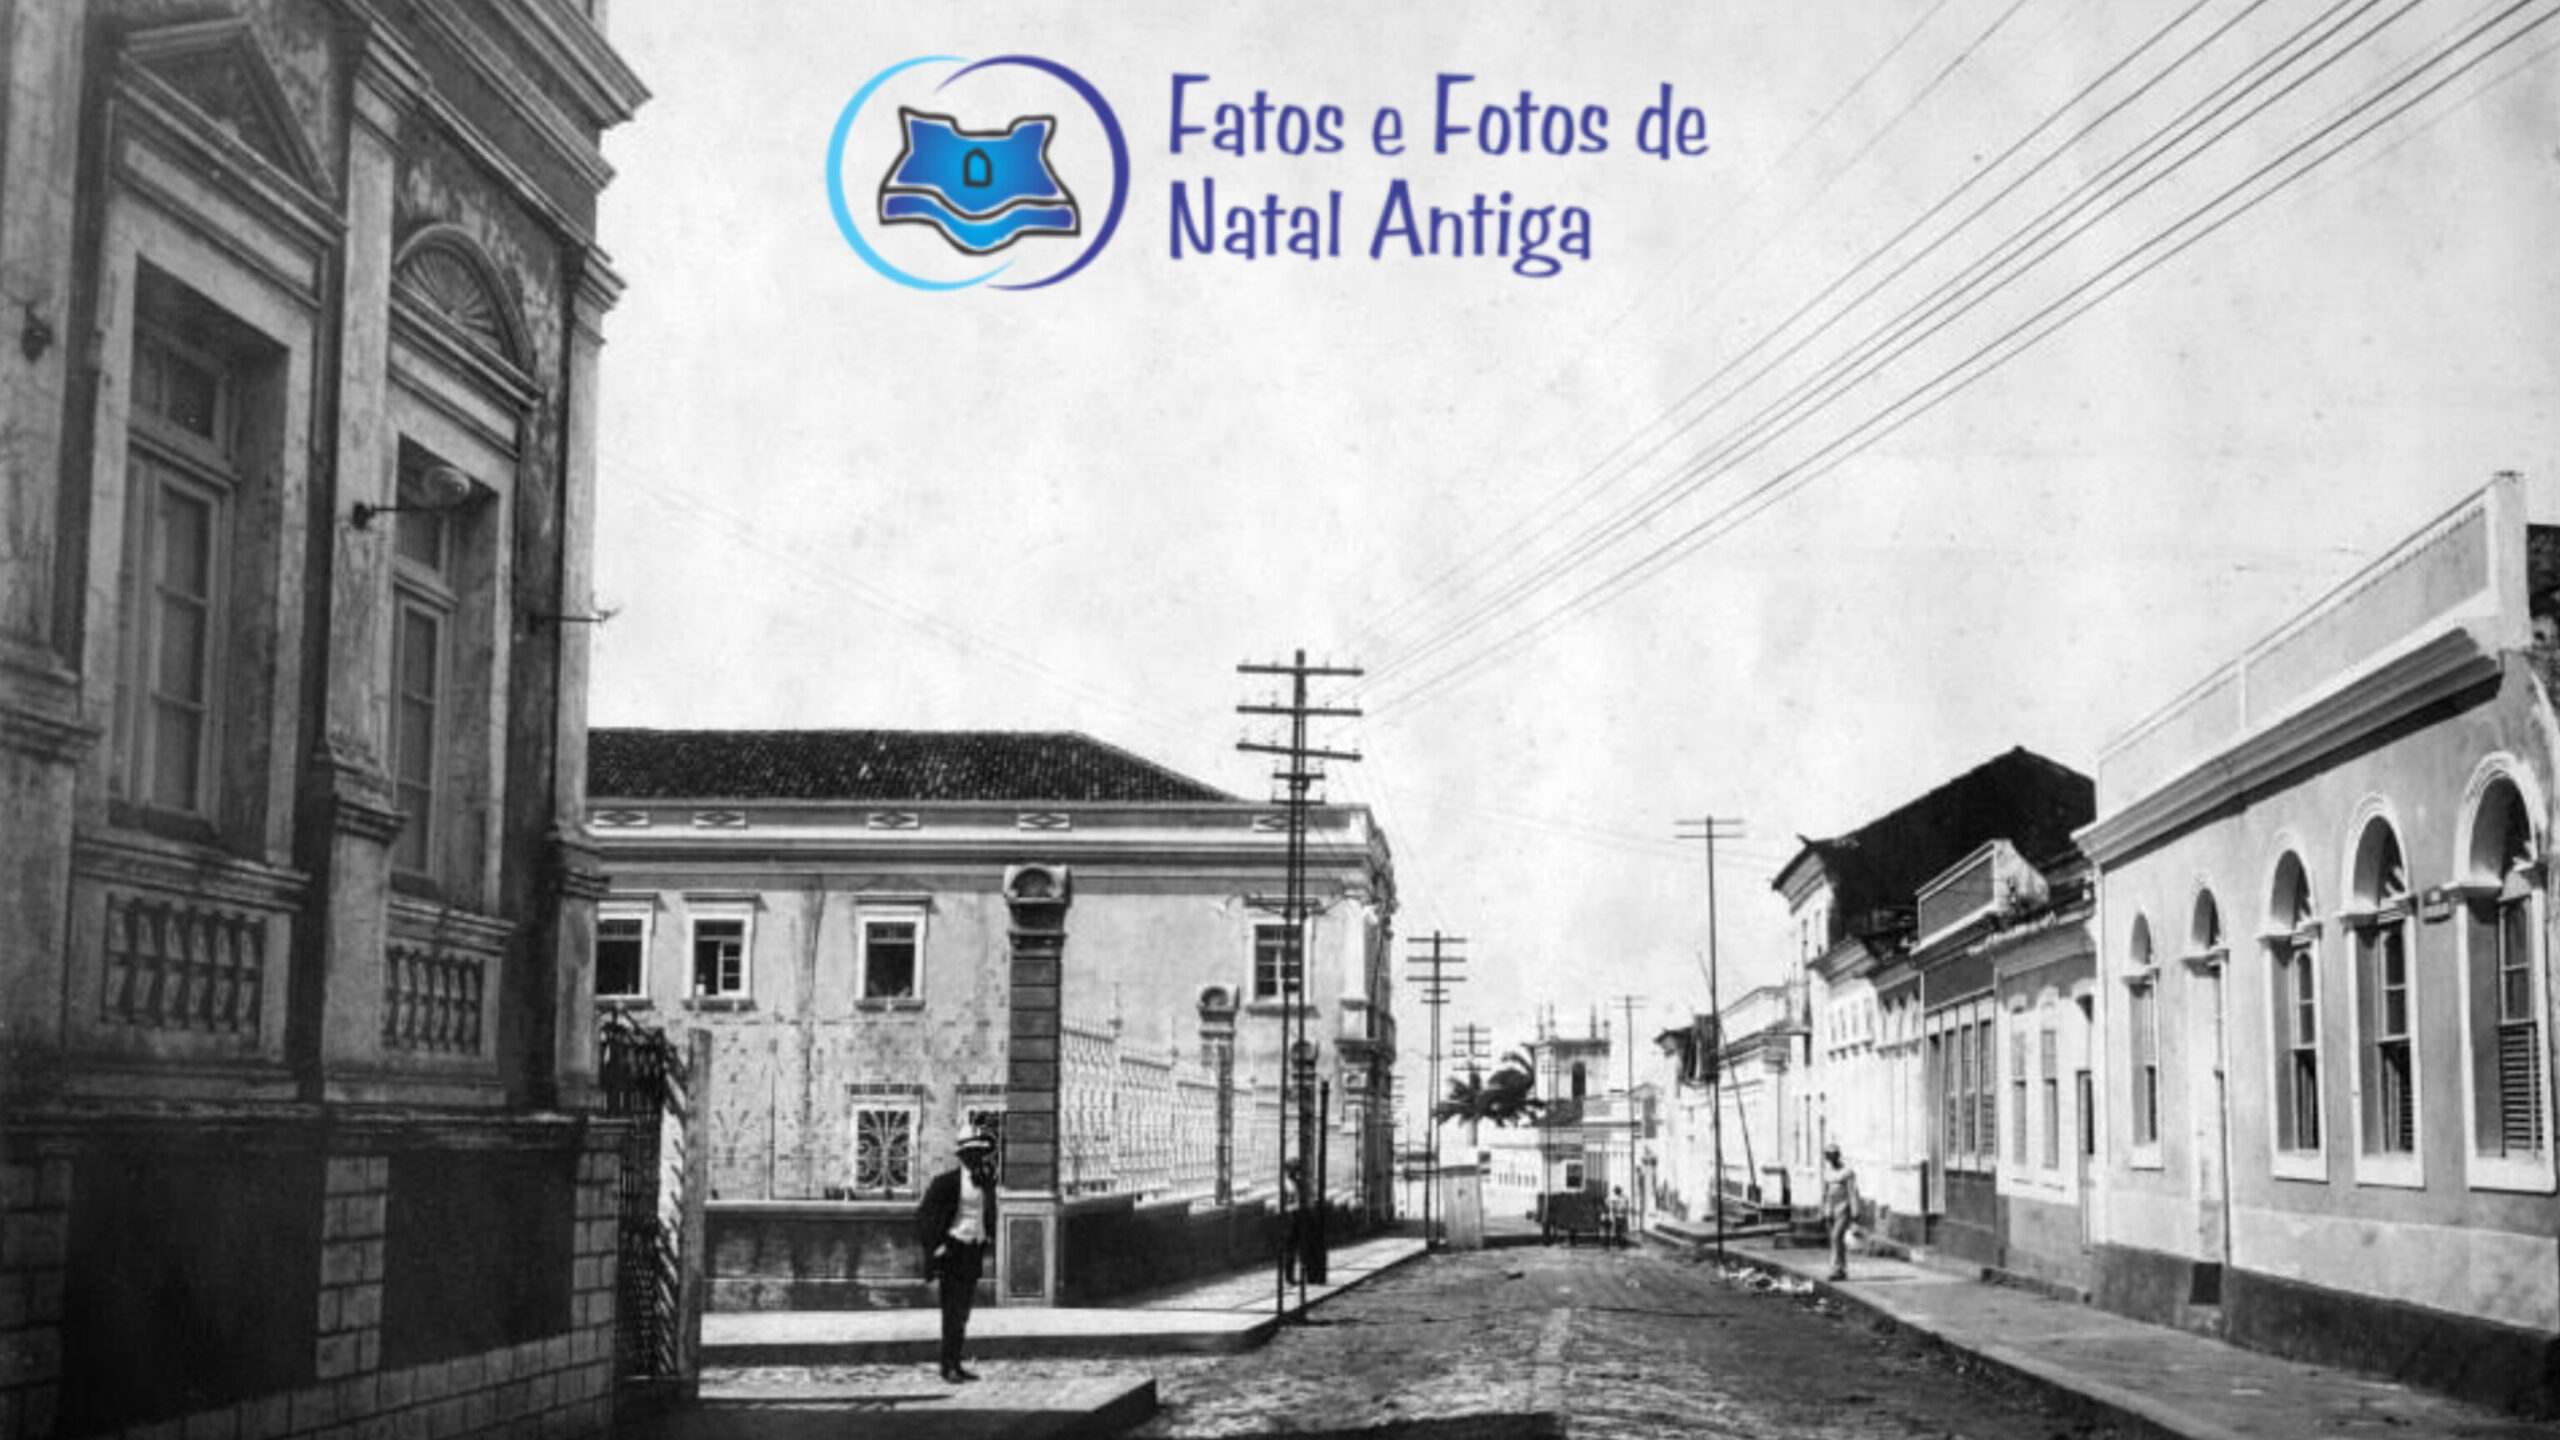 Rua da Conceição – Fatos e Fotos de Natal Antiga